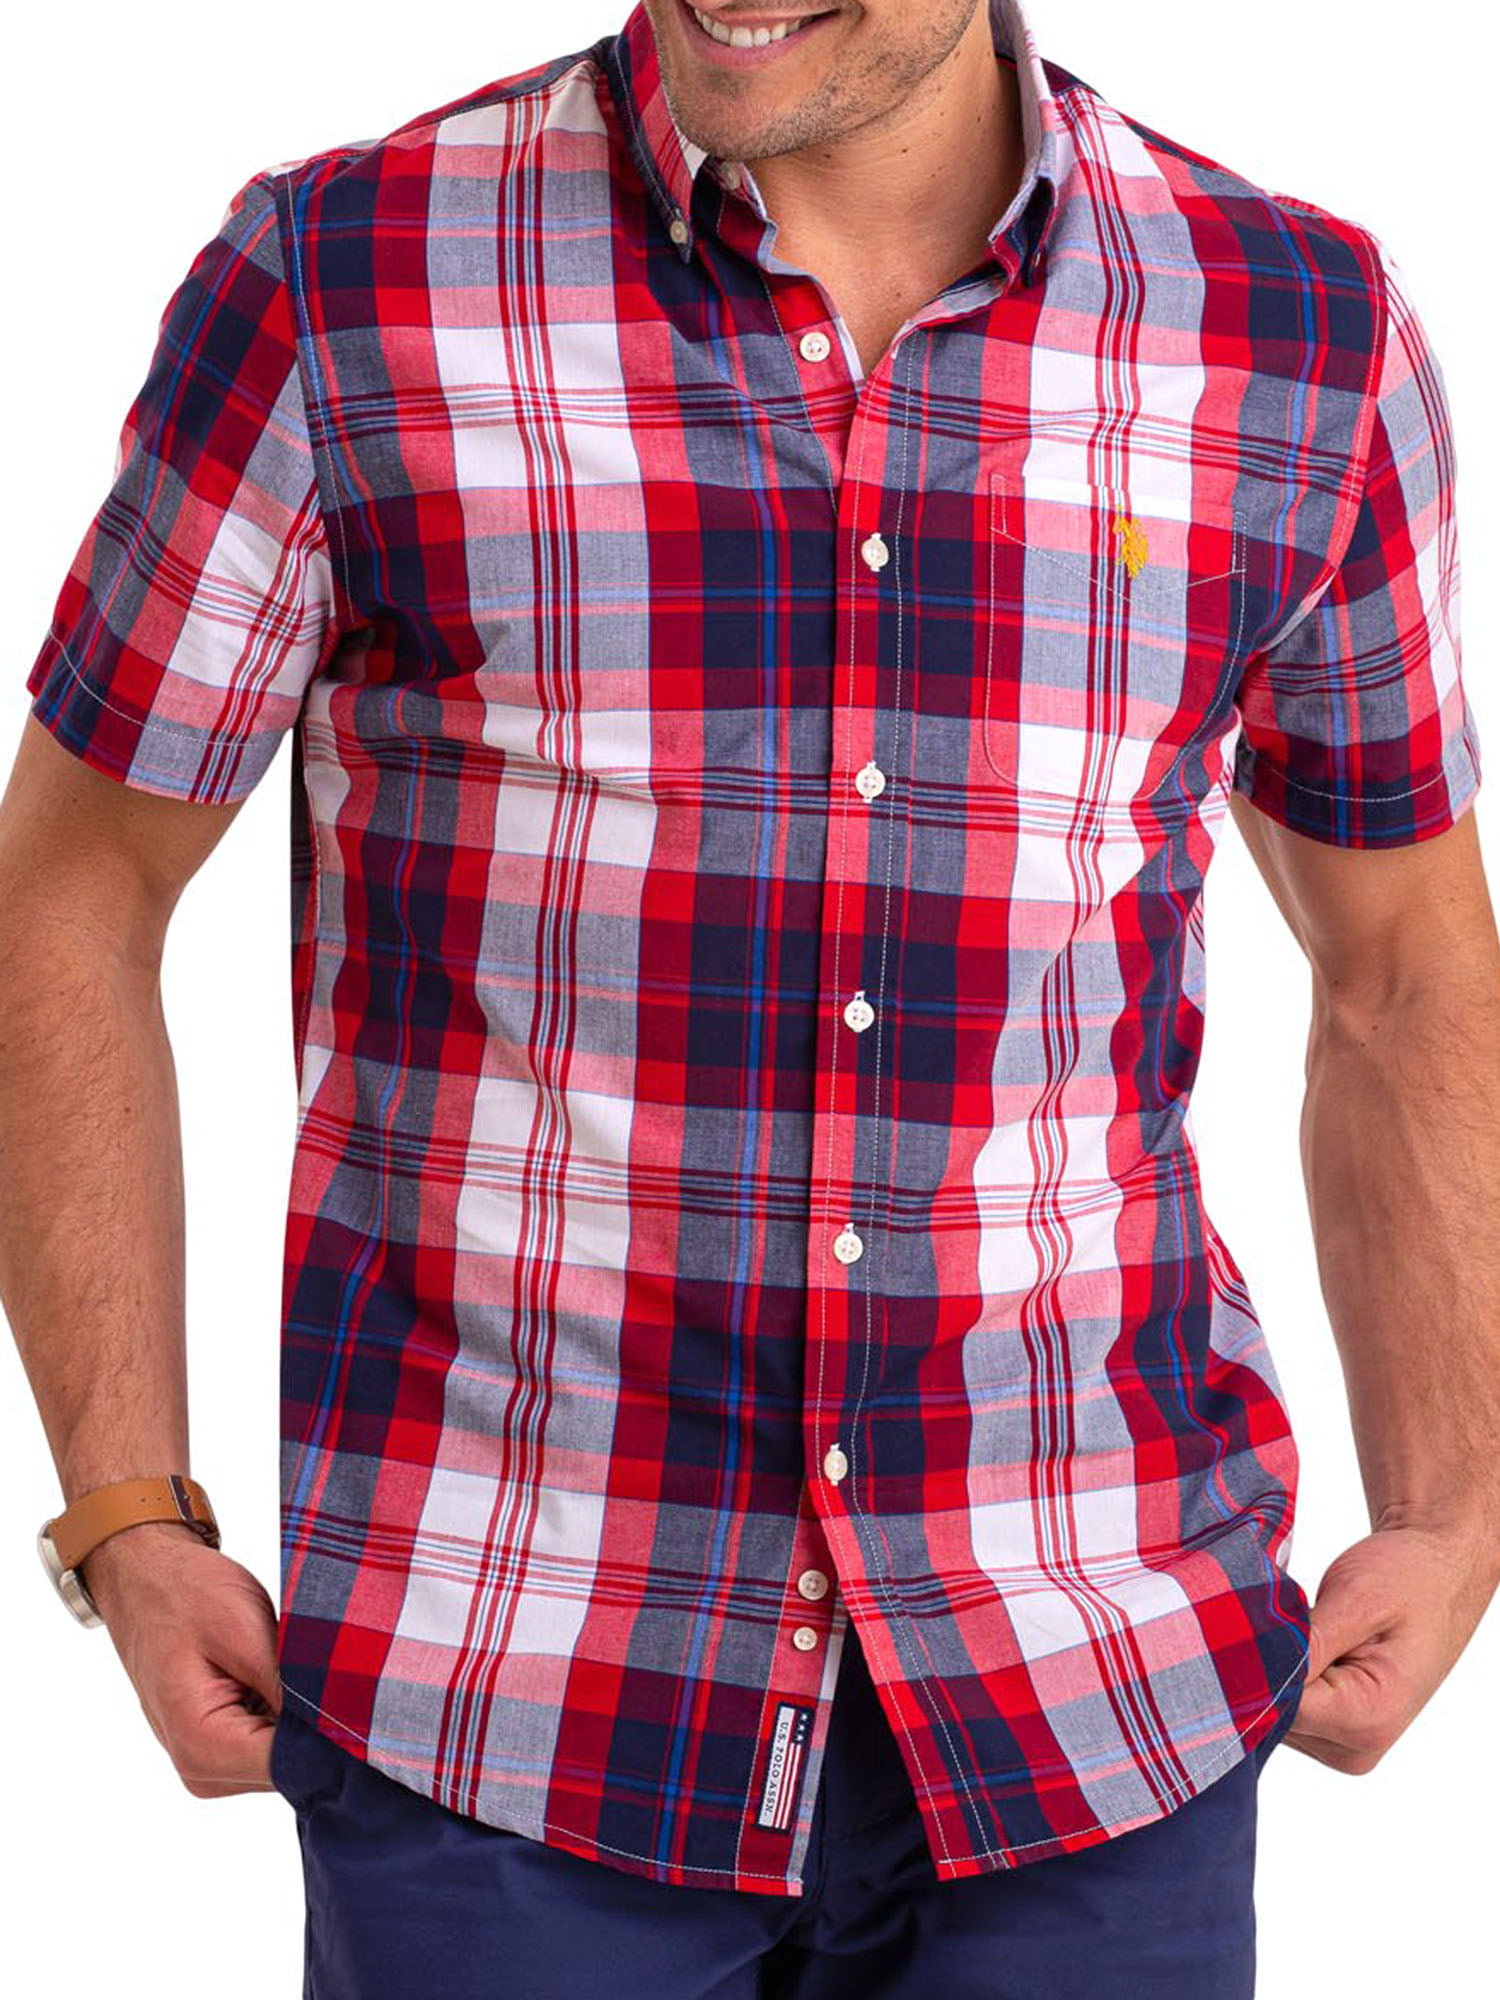 U.S. Polo Assn Men's Short Sleeve Plaid Shirt - Walmart.com